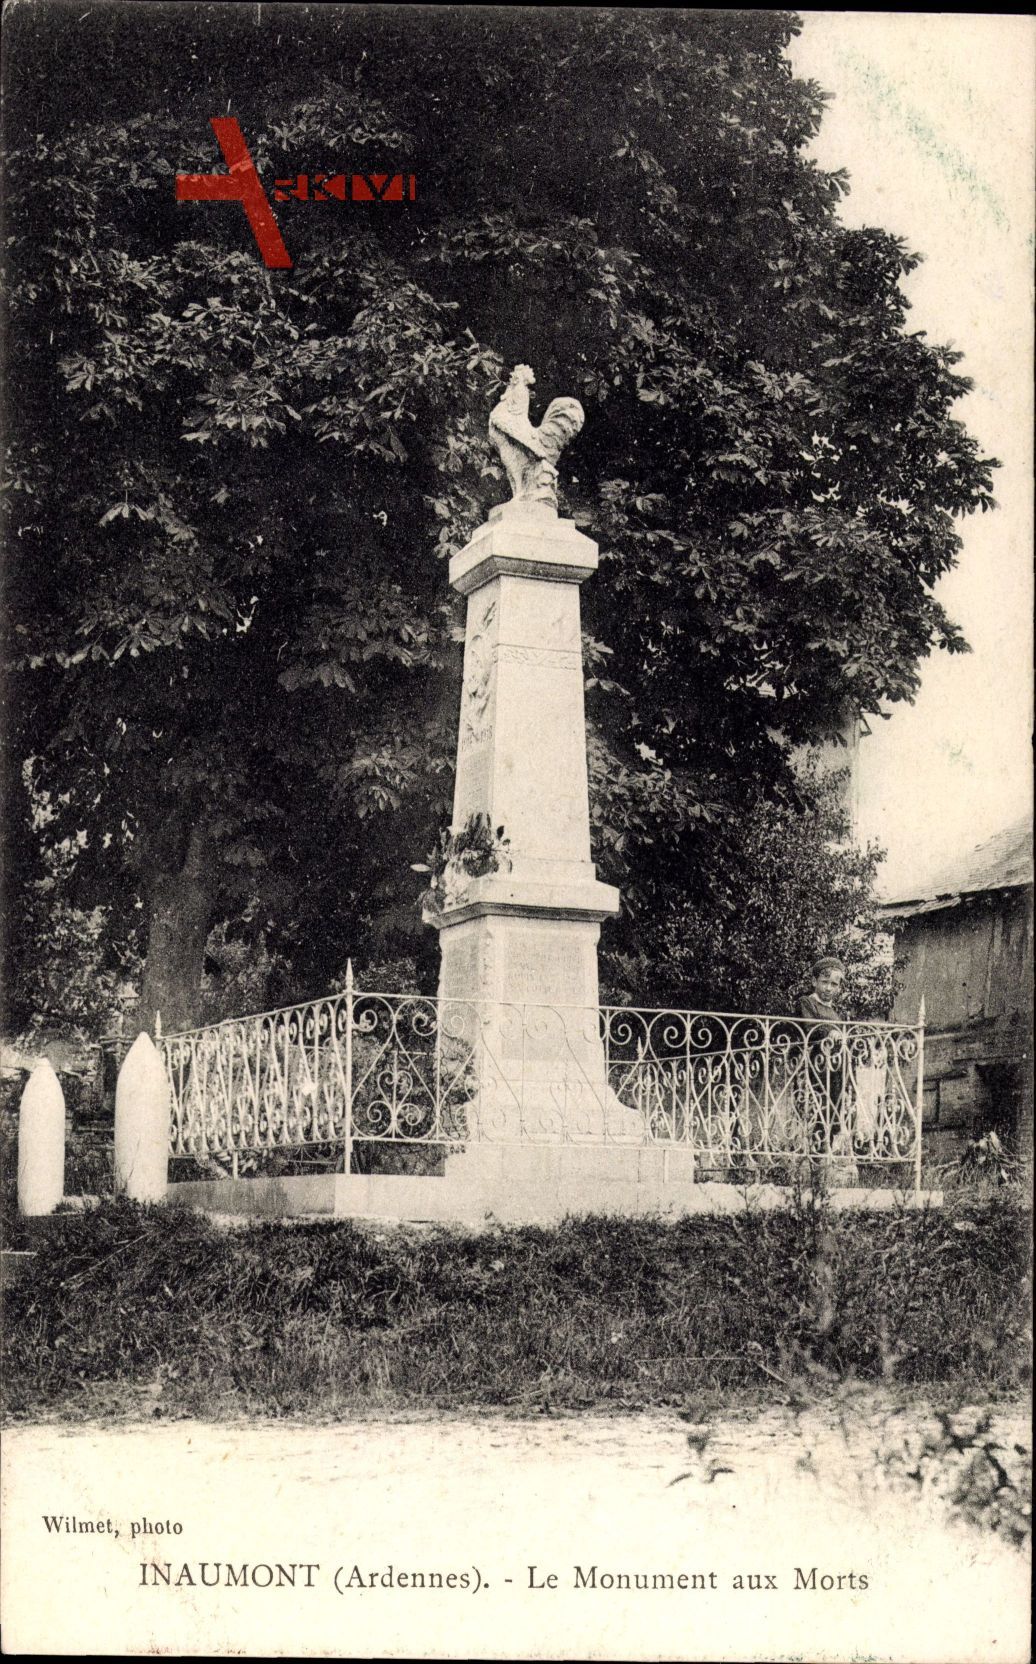 Inaumont Ardennes, Le Monument aux Morts, Eingezäuntes Denkmal